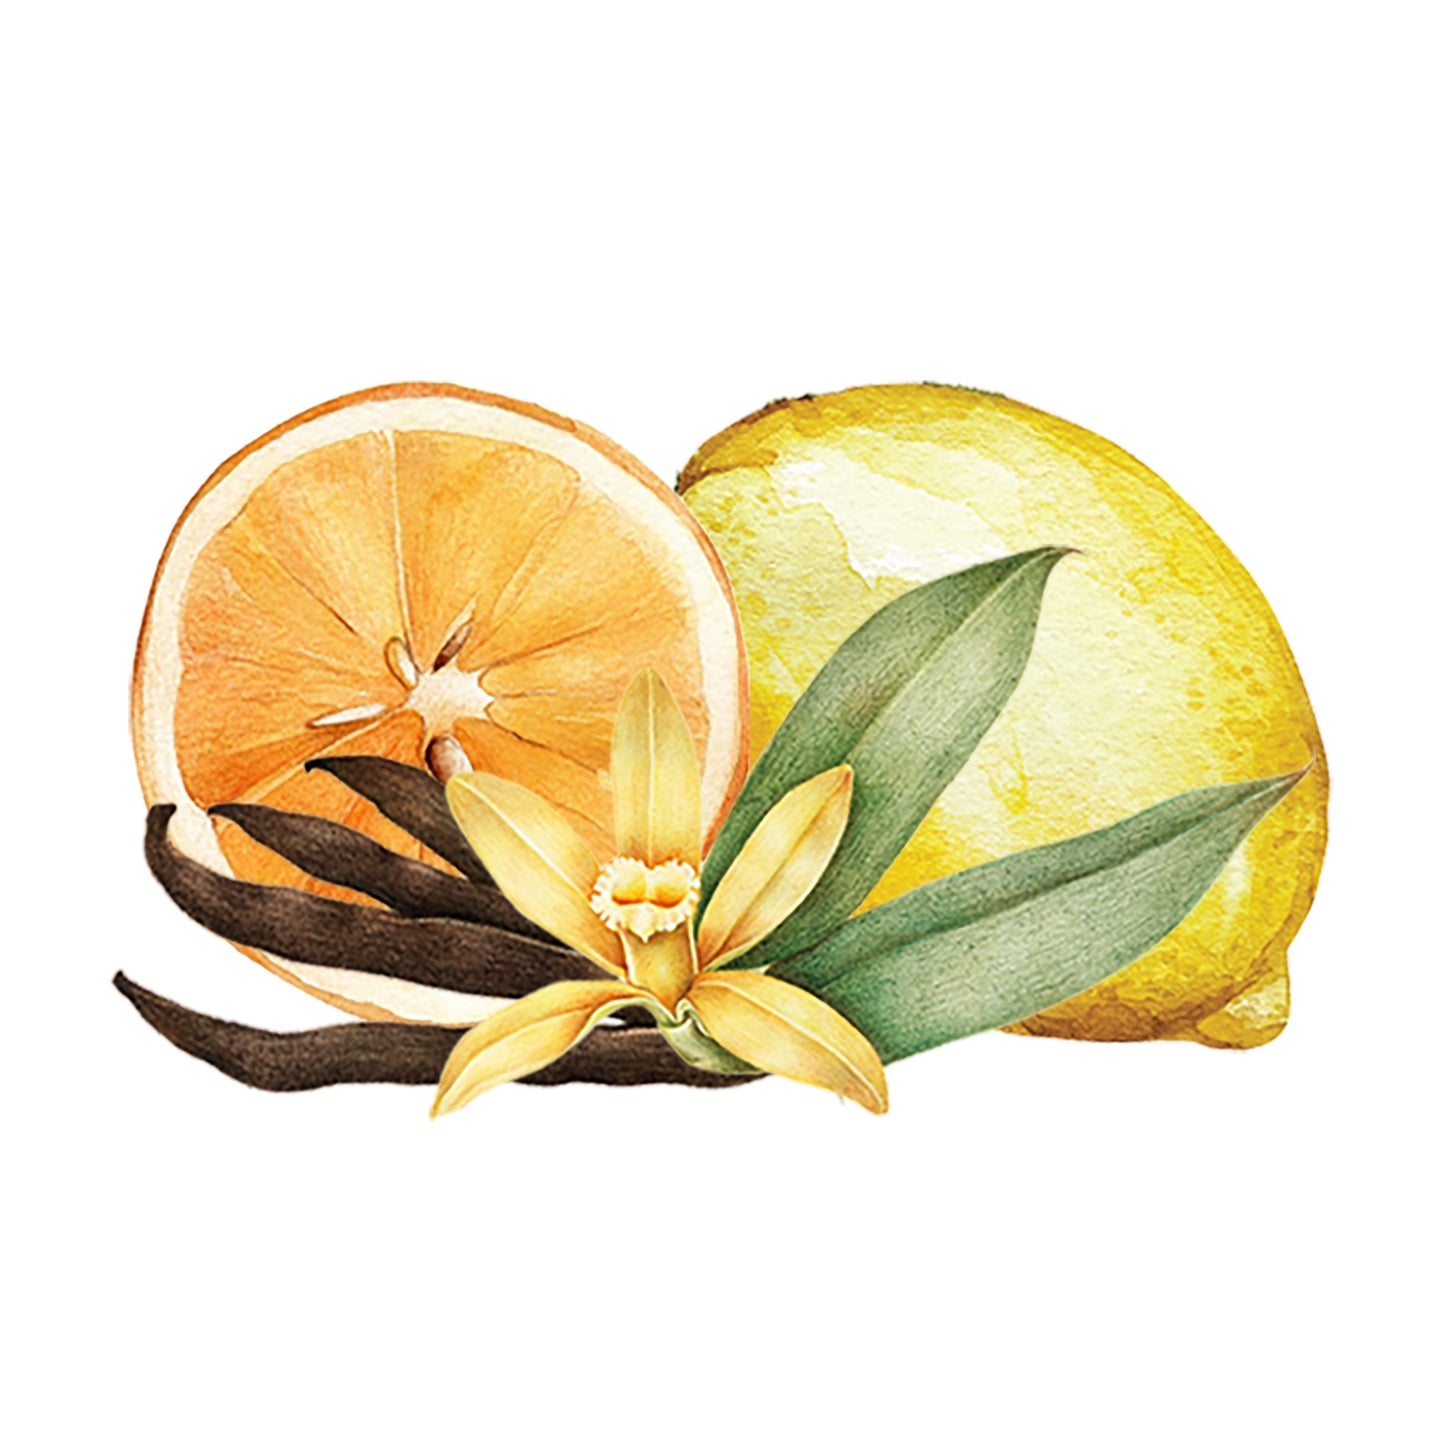 Citrus & Vanilla EO / FO Blend